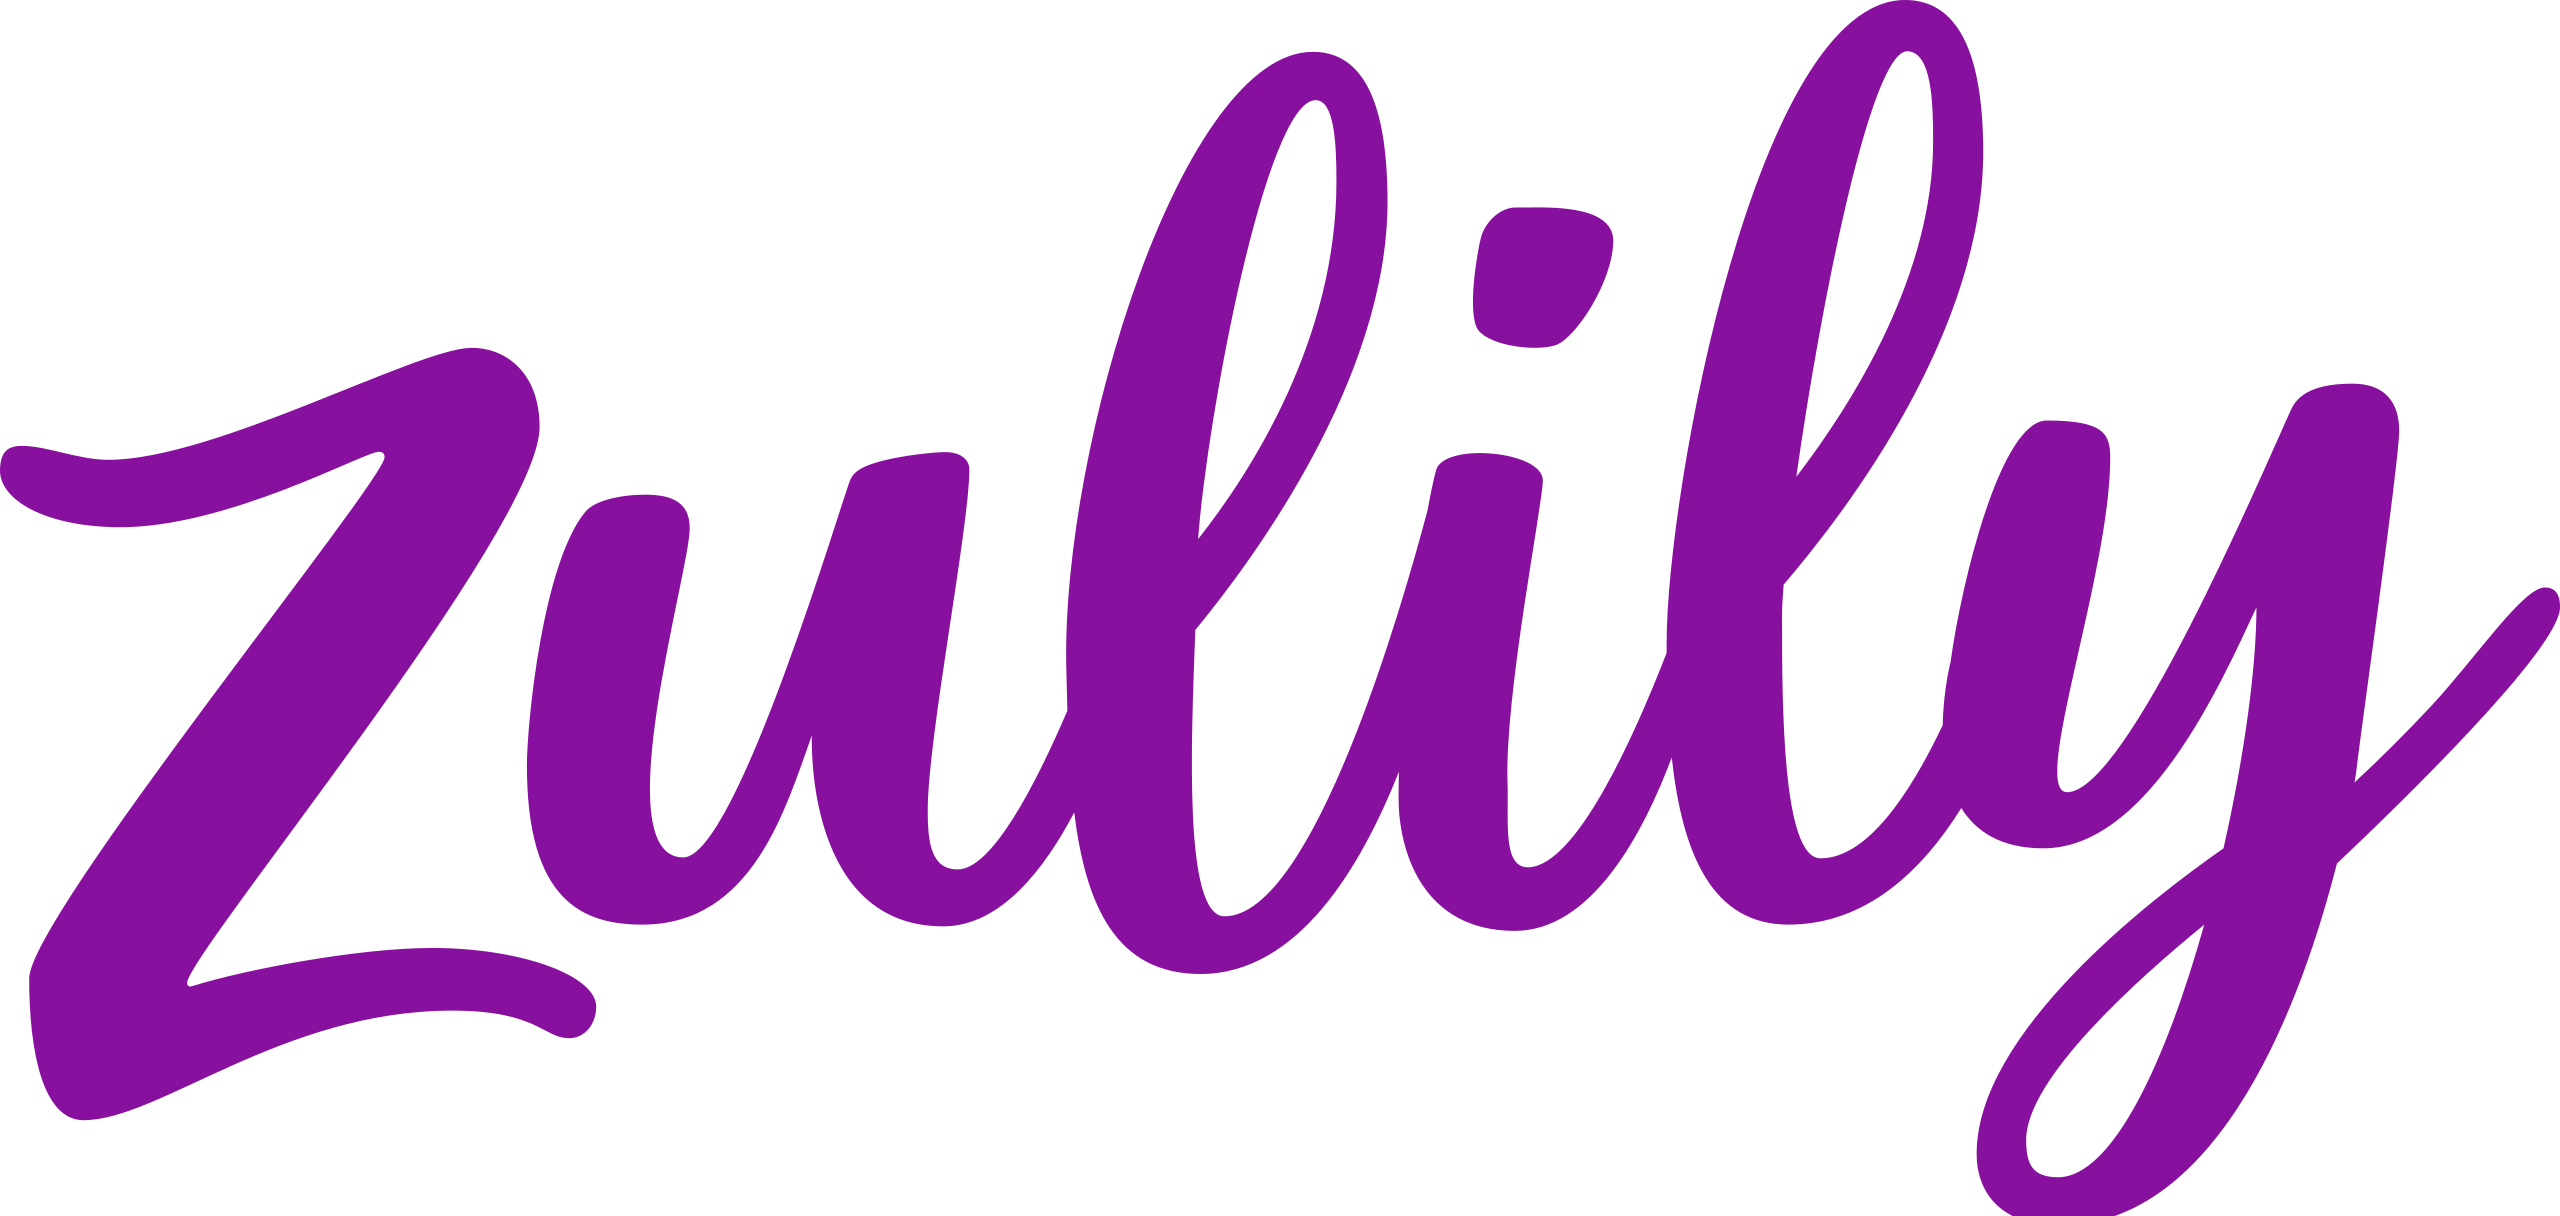 Logotipo da Zulily